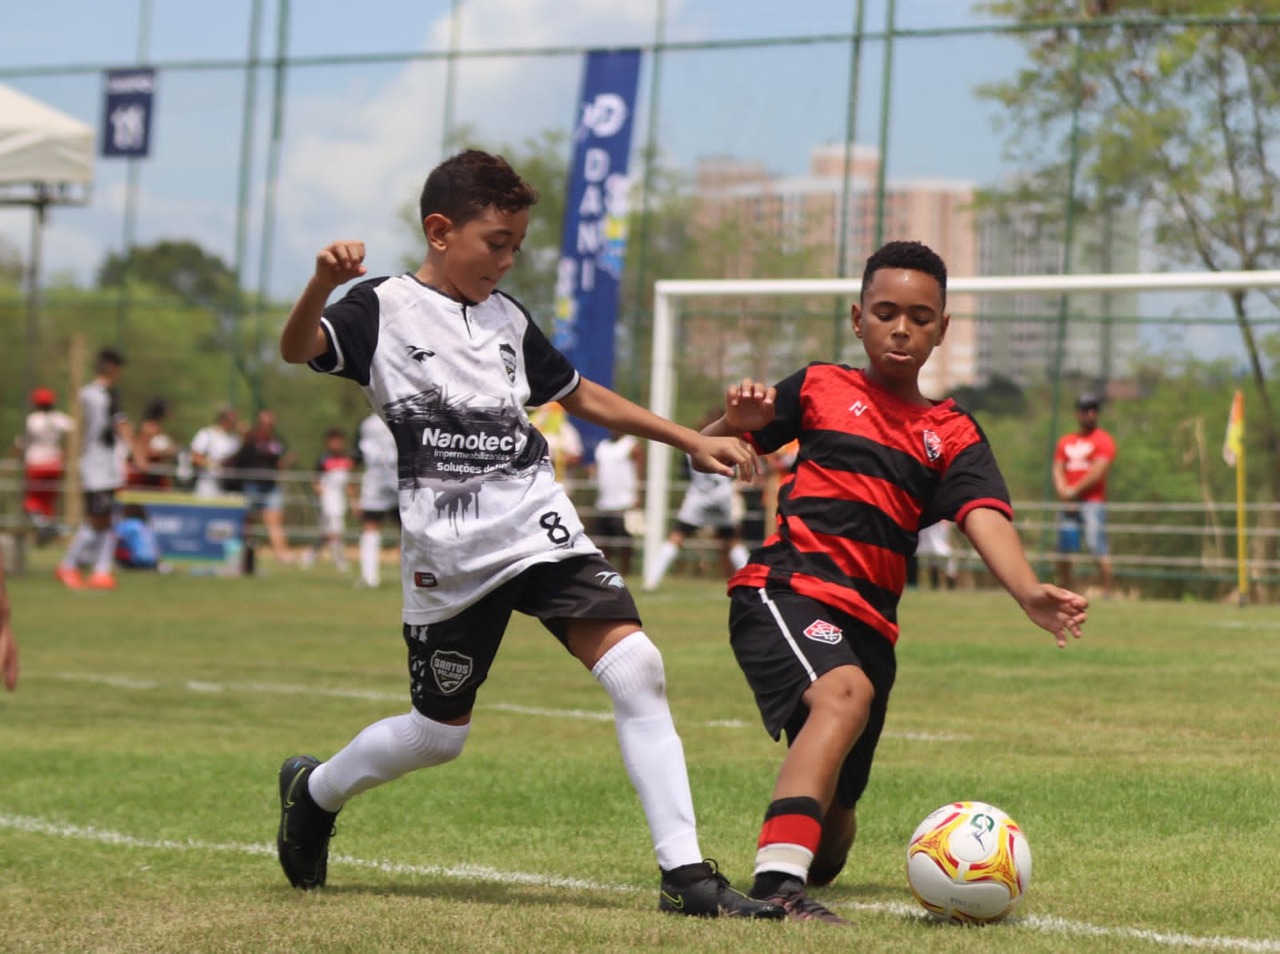 Salvador recebe torneio de futebol infantil com quase 2 mil jovens atletas de cinco países